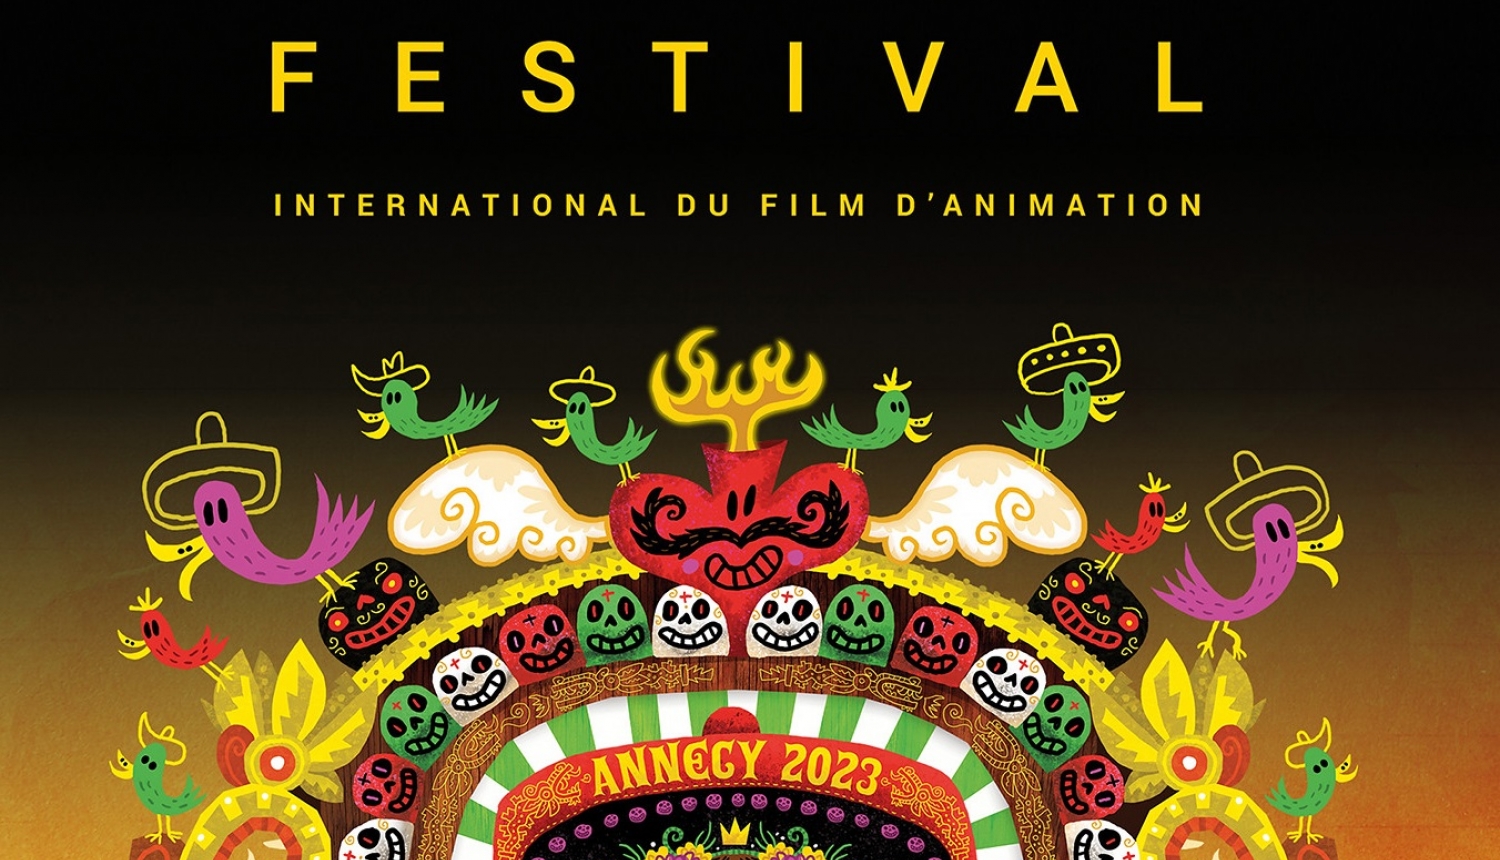 Annecy festivāla plakāts